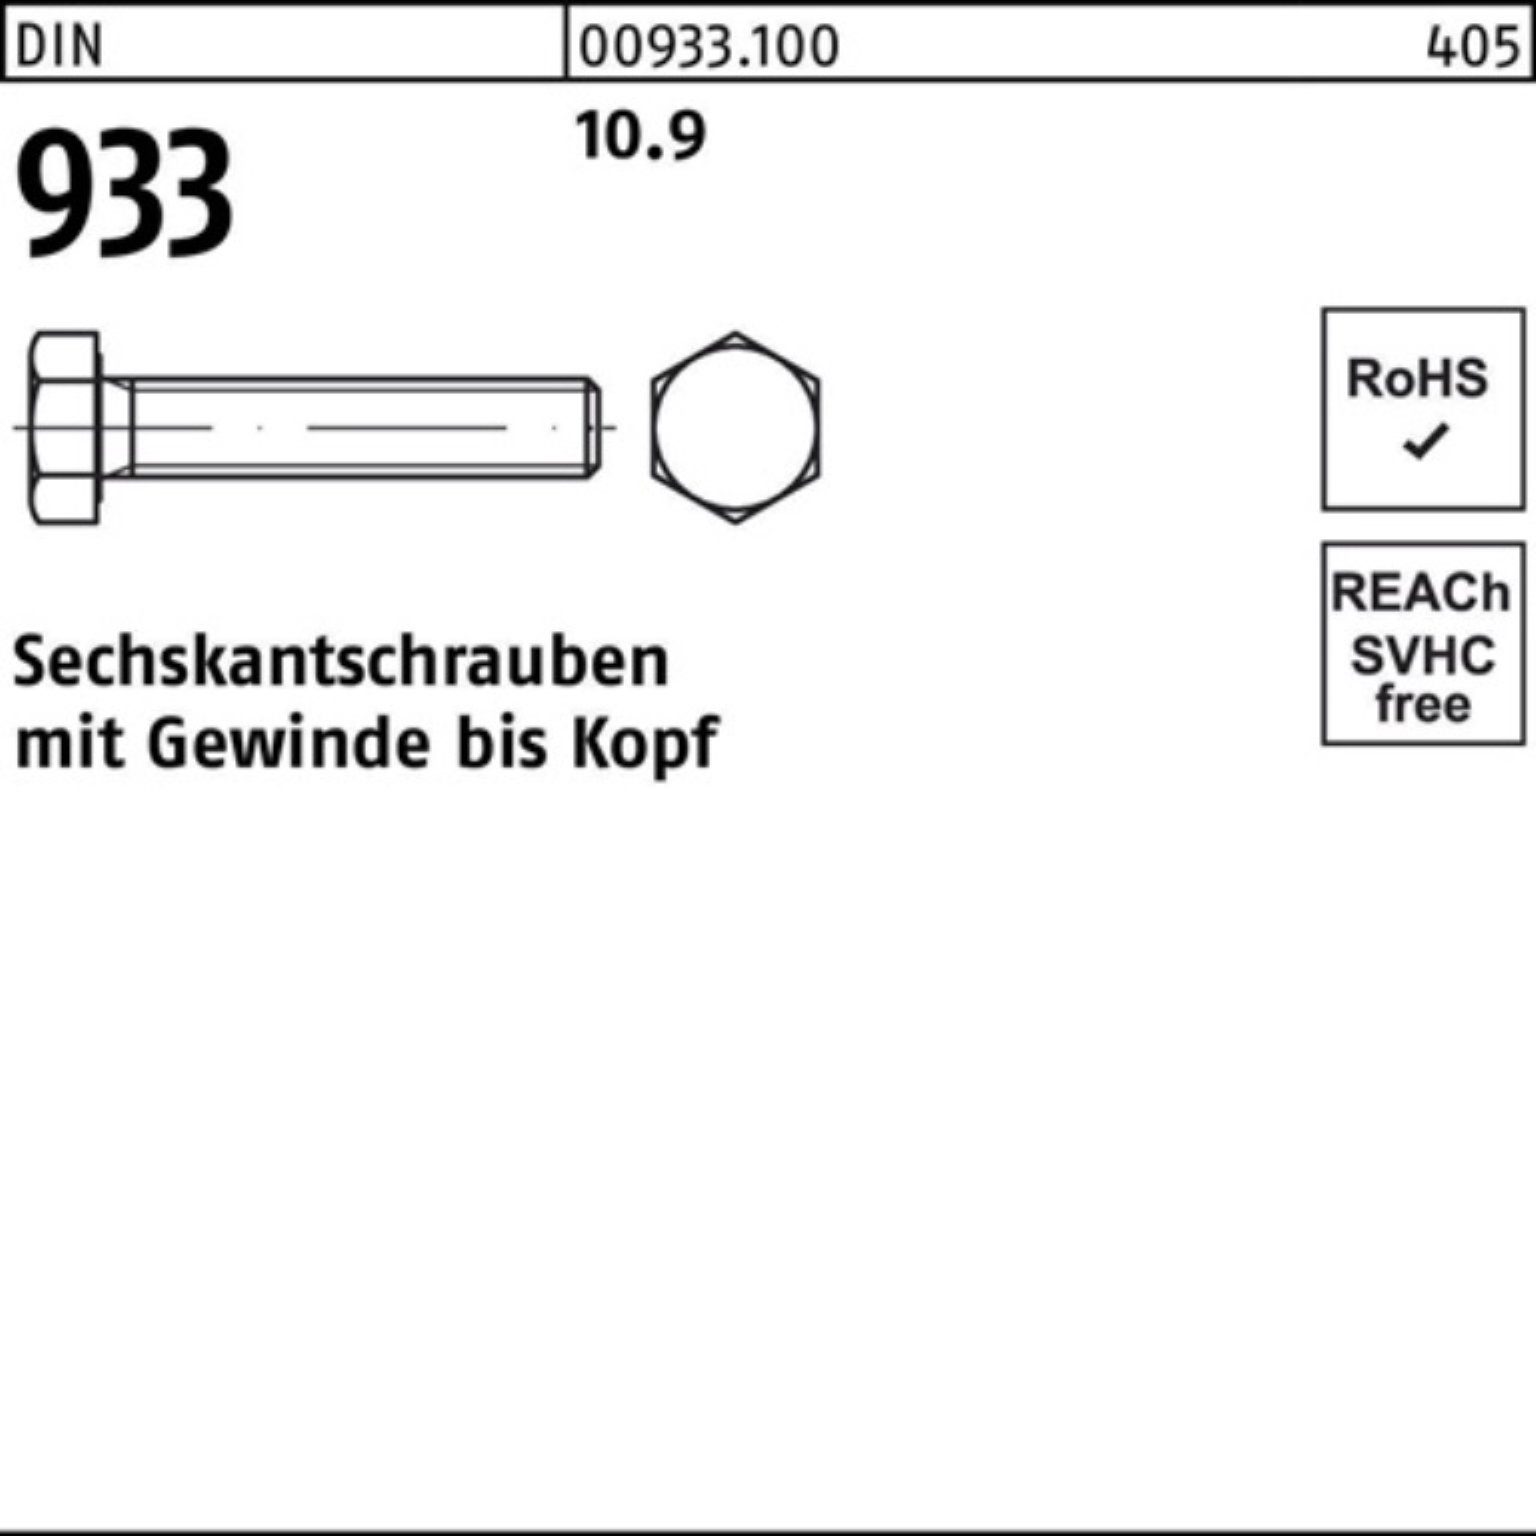 Reyher Sechskantschraube 100er 933 Stück 10.9 DIN Sechskantschraube Pack 933 20 DIN M6x VG 100